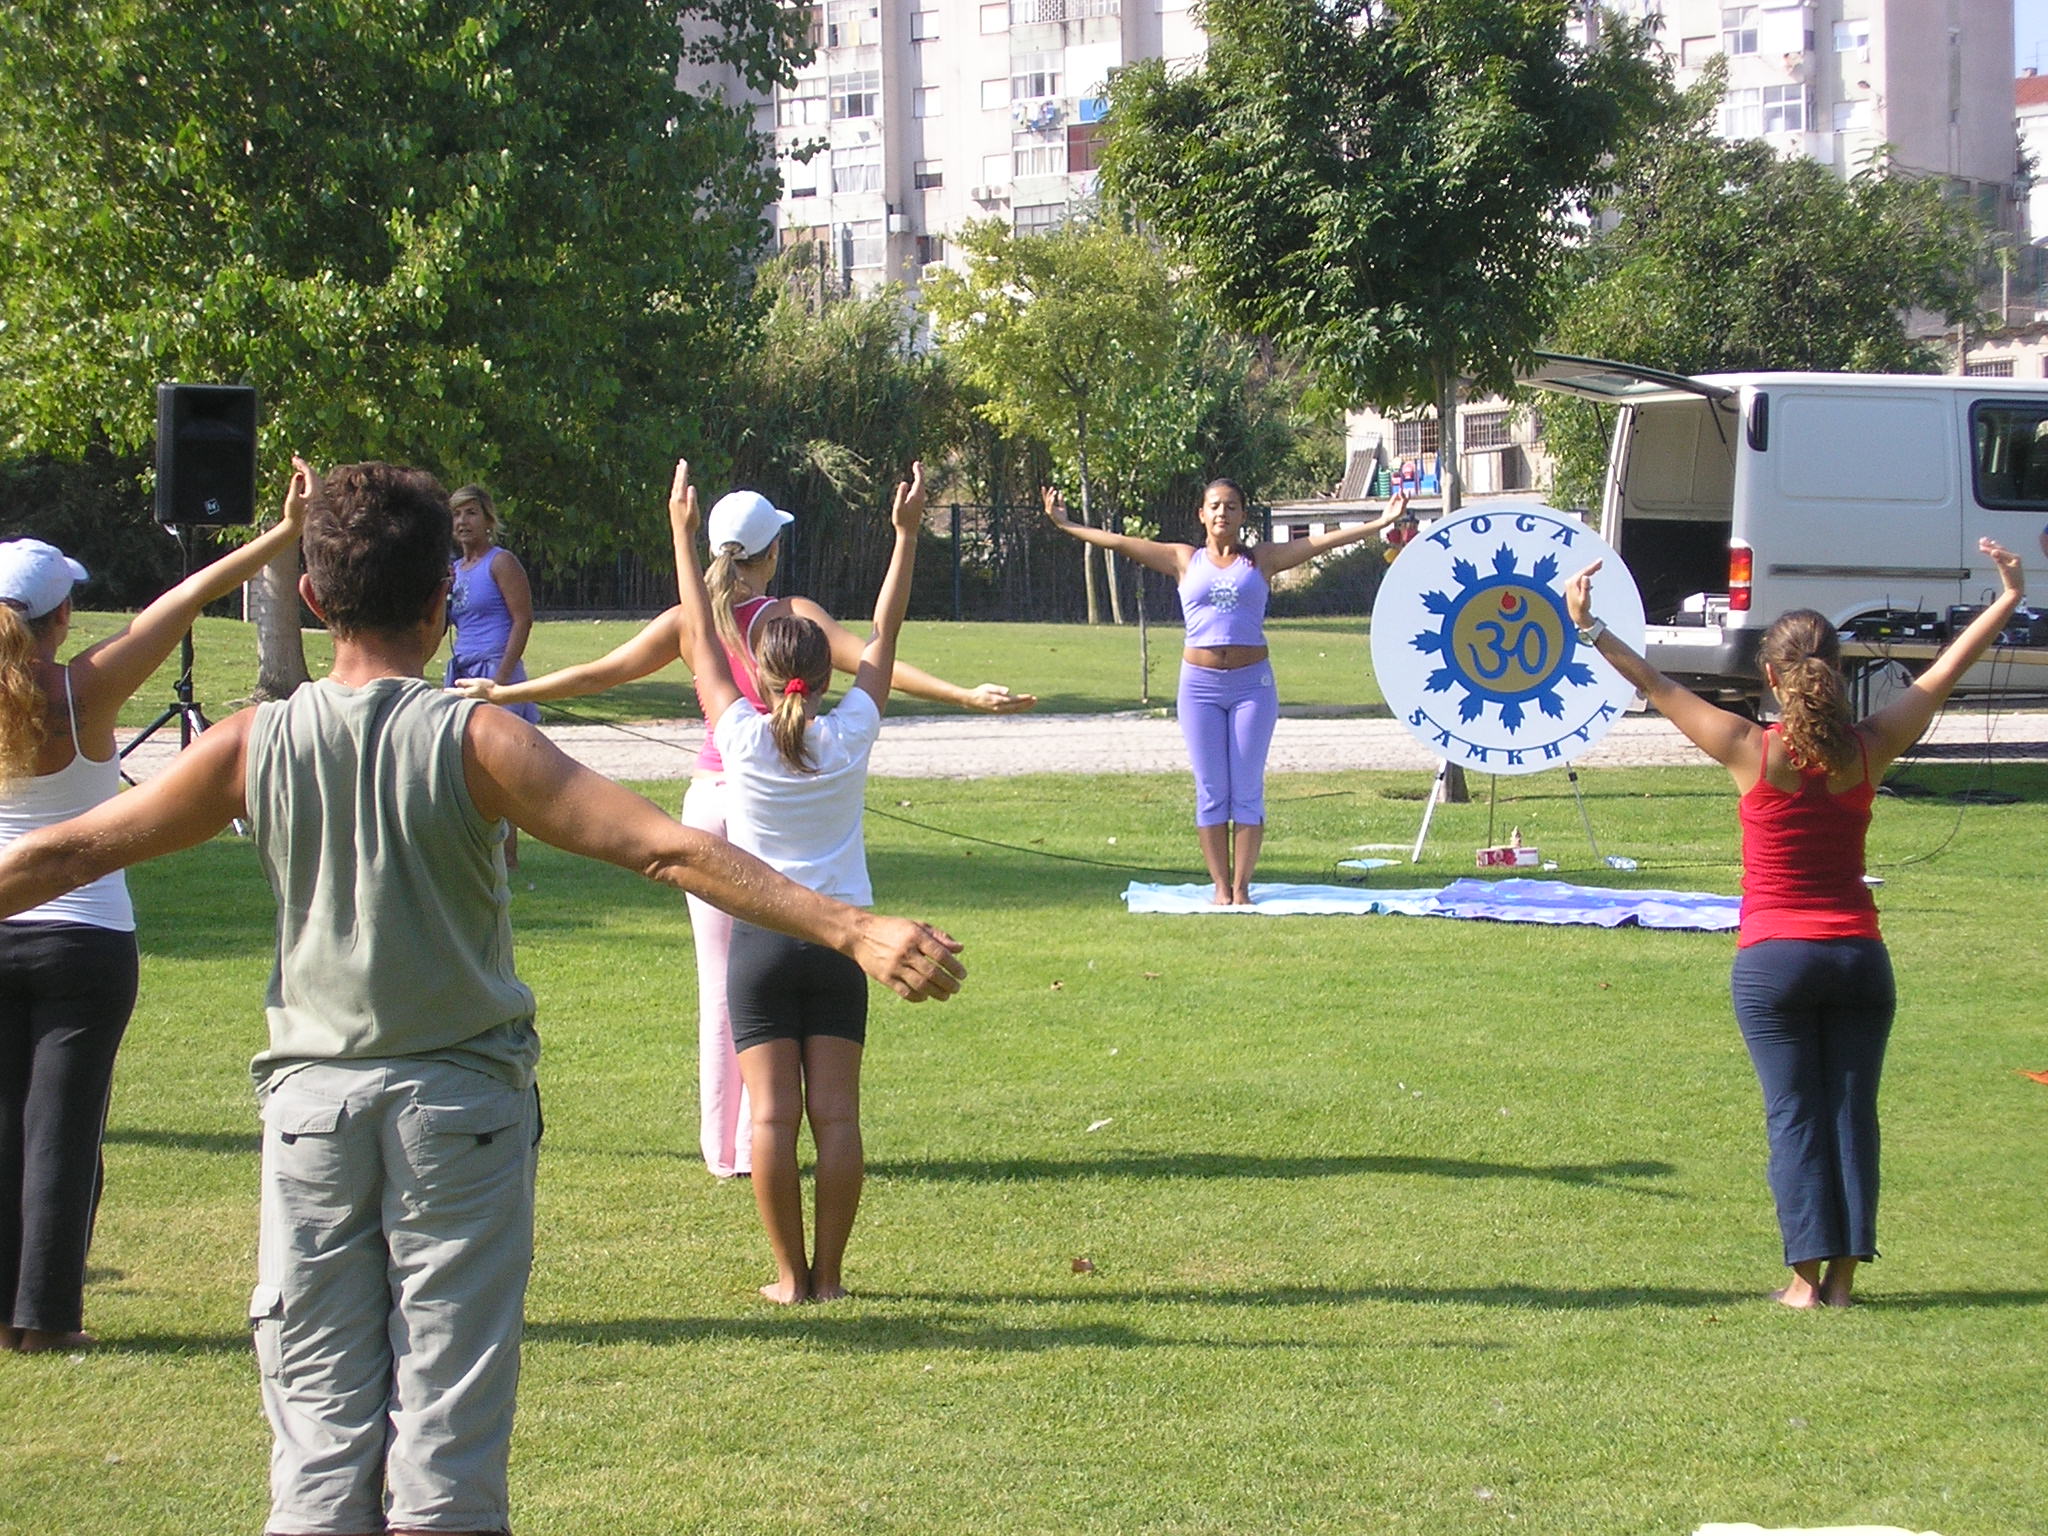 Yoga no Parque | Horário de Verão: das 10h30 às 11h30 | Fins-de-Semana Desportivos